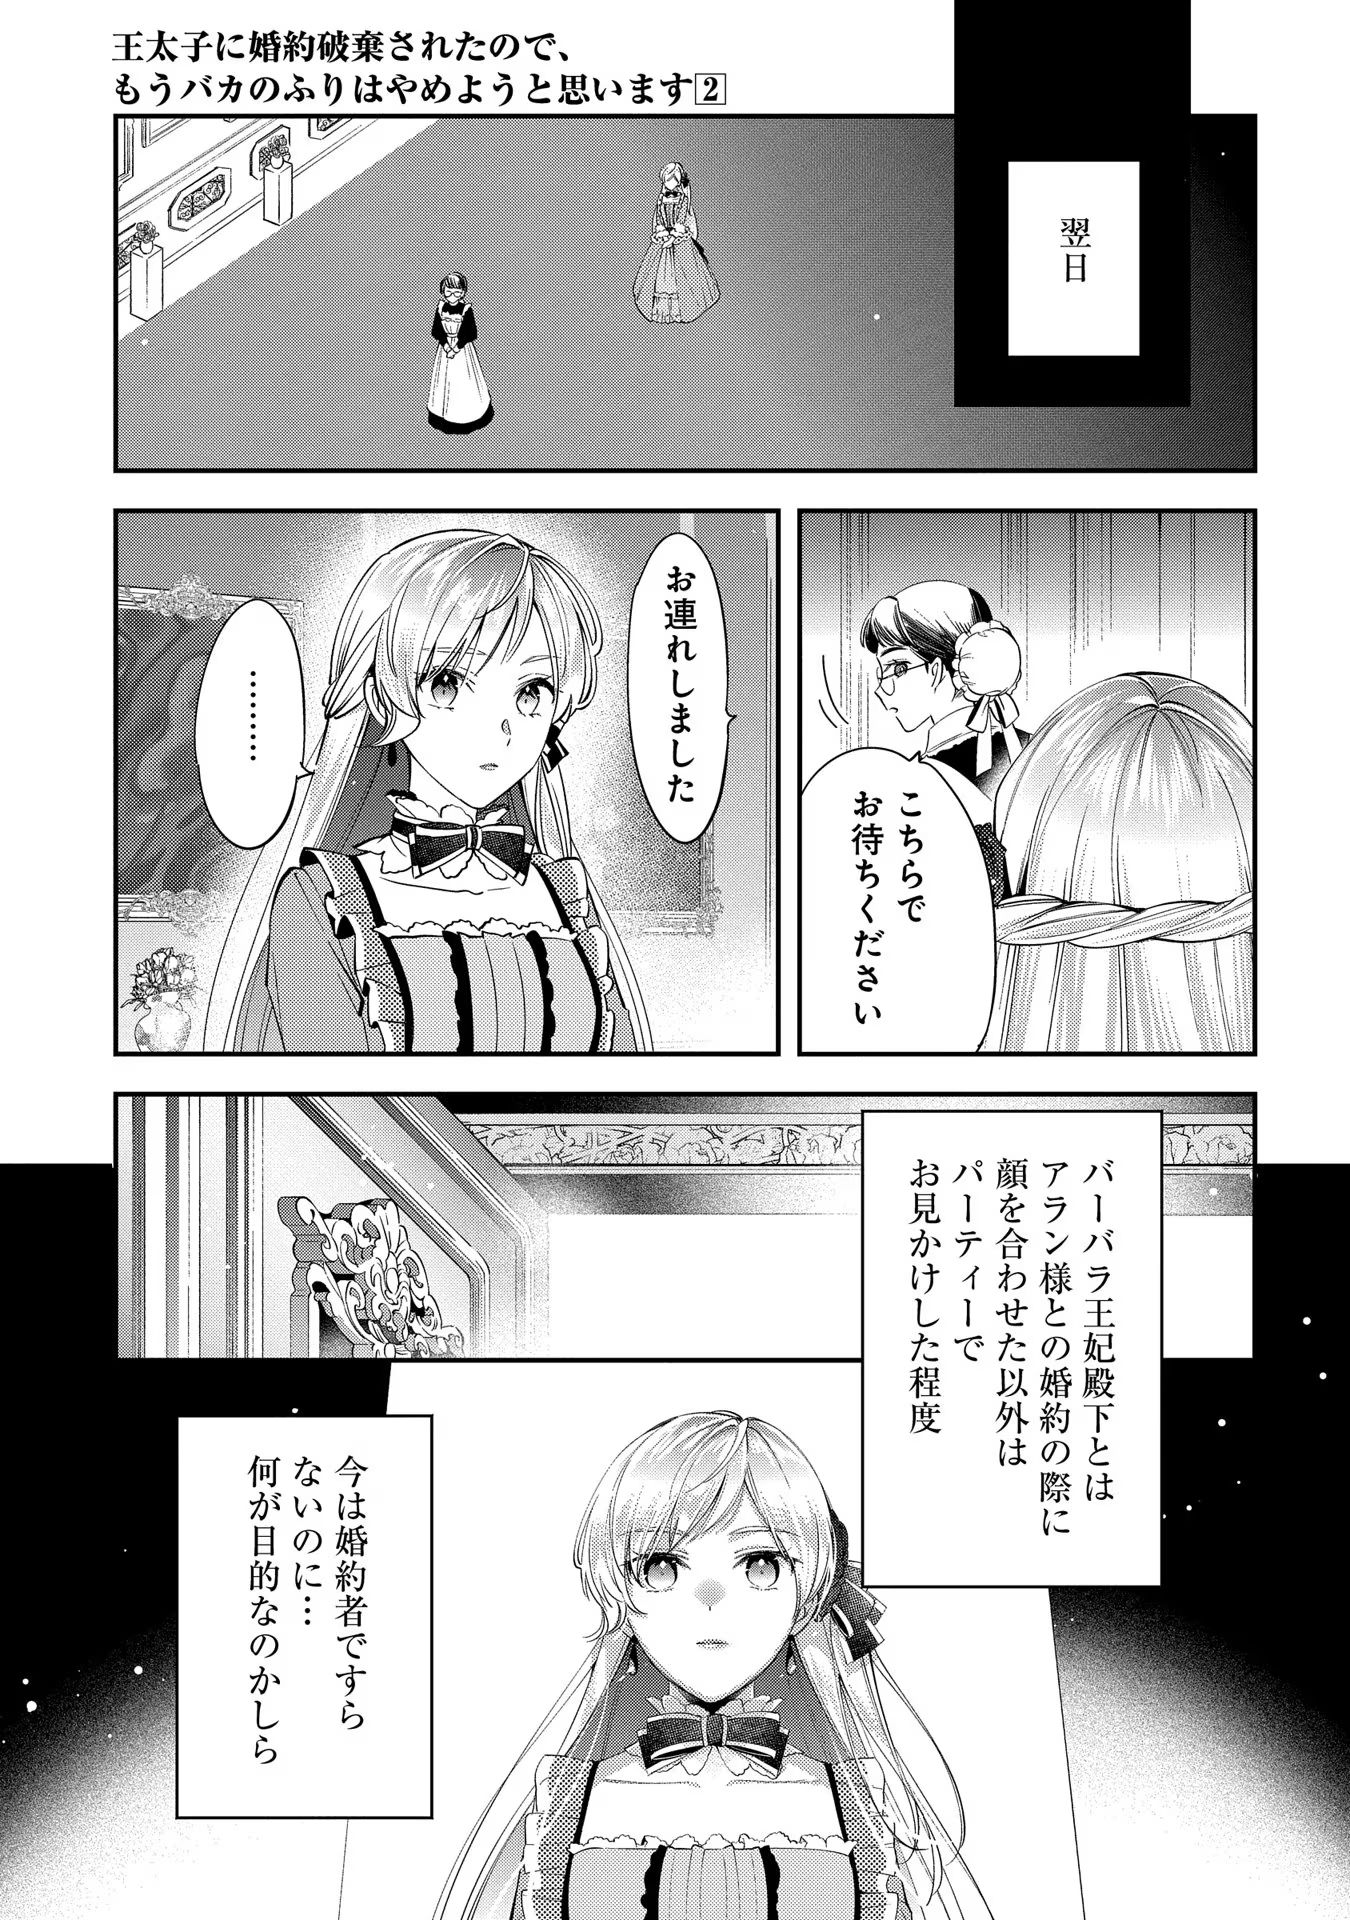 Outaishi ni Konyaku Hakisareta no de, Mou Baka no Furi wa Yameyou to Omoimasu - Chapter 6 - Page 14